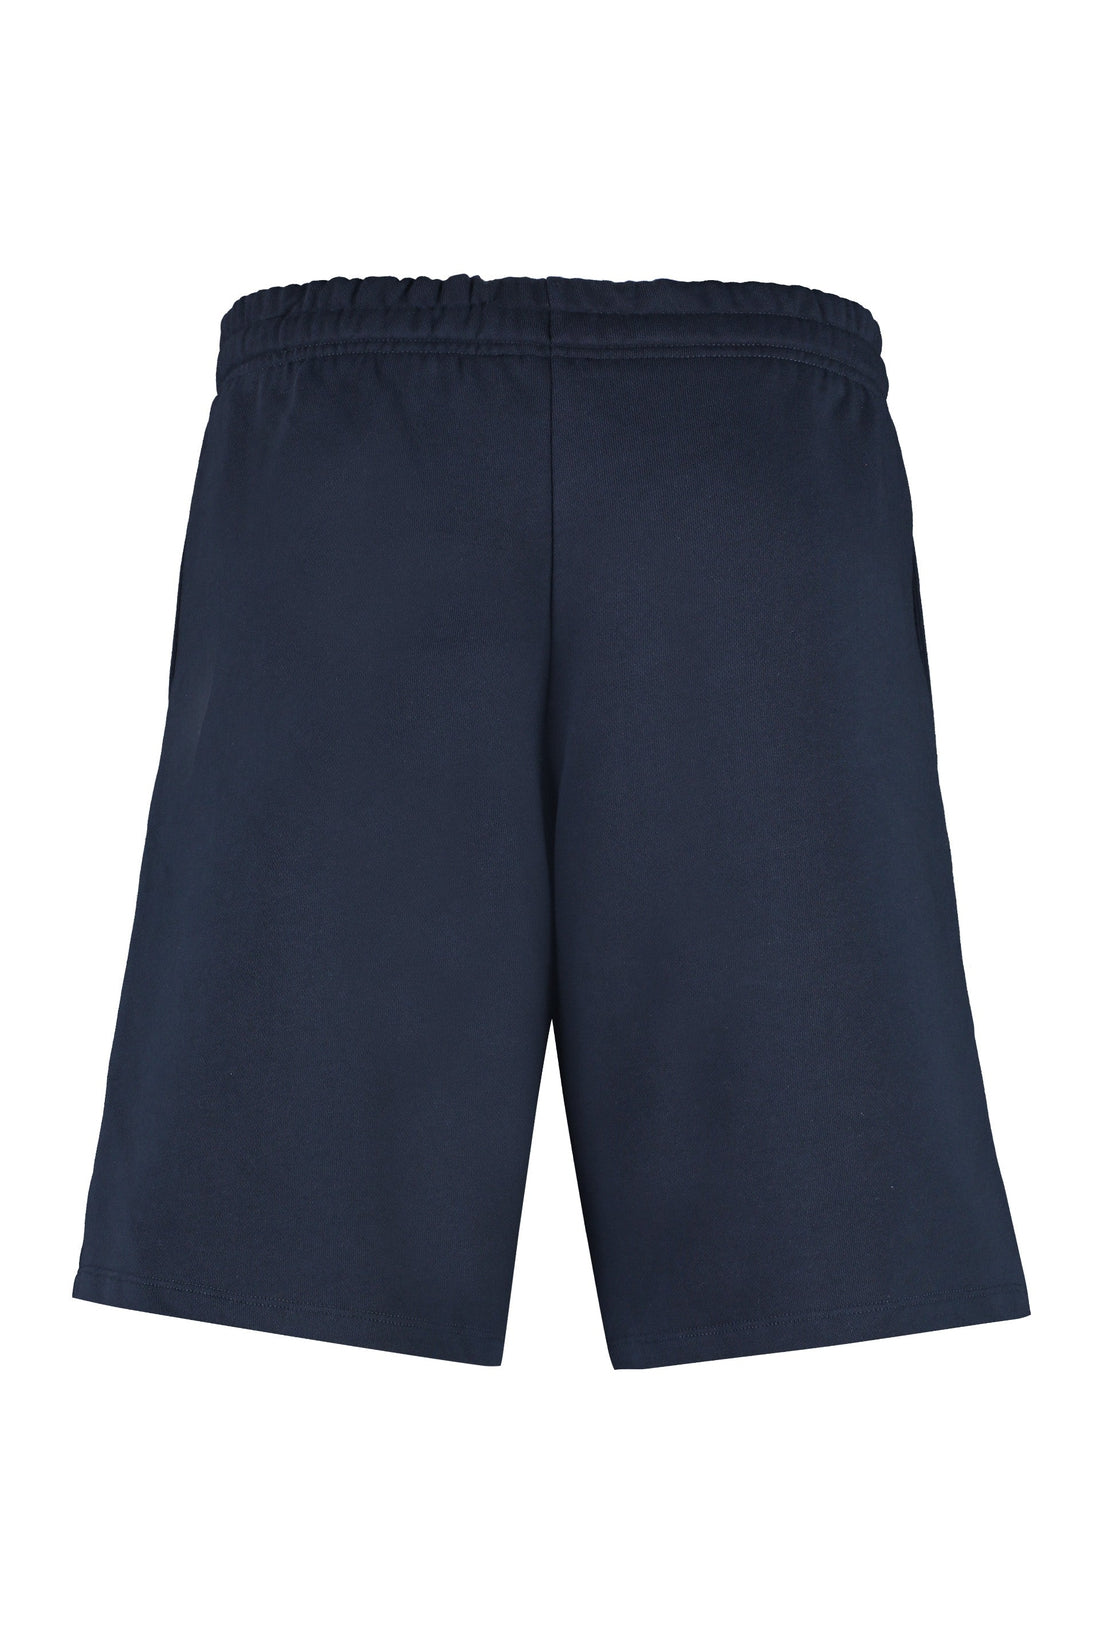 A.P.C.-OUTLET-SALE-Stretch cotton shorts-ARCHIVIST